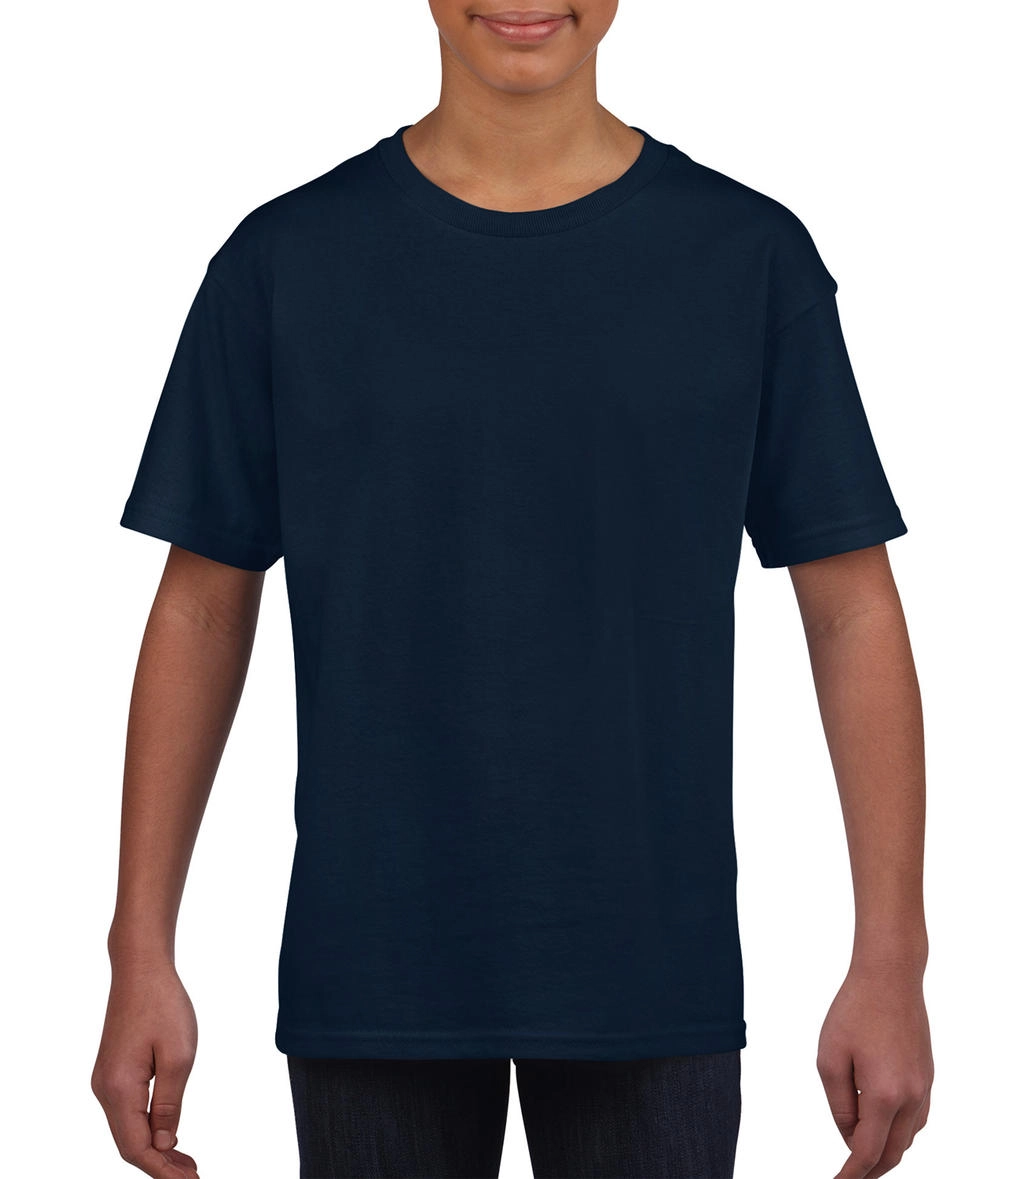 Softstyle® Youth T-Shirt zum Besticken und Bedrucken in der Farbe Navy mit Ihren Logo, Schriftzug oder Motiv.